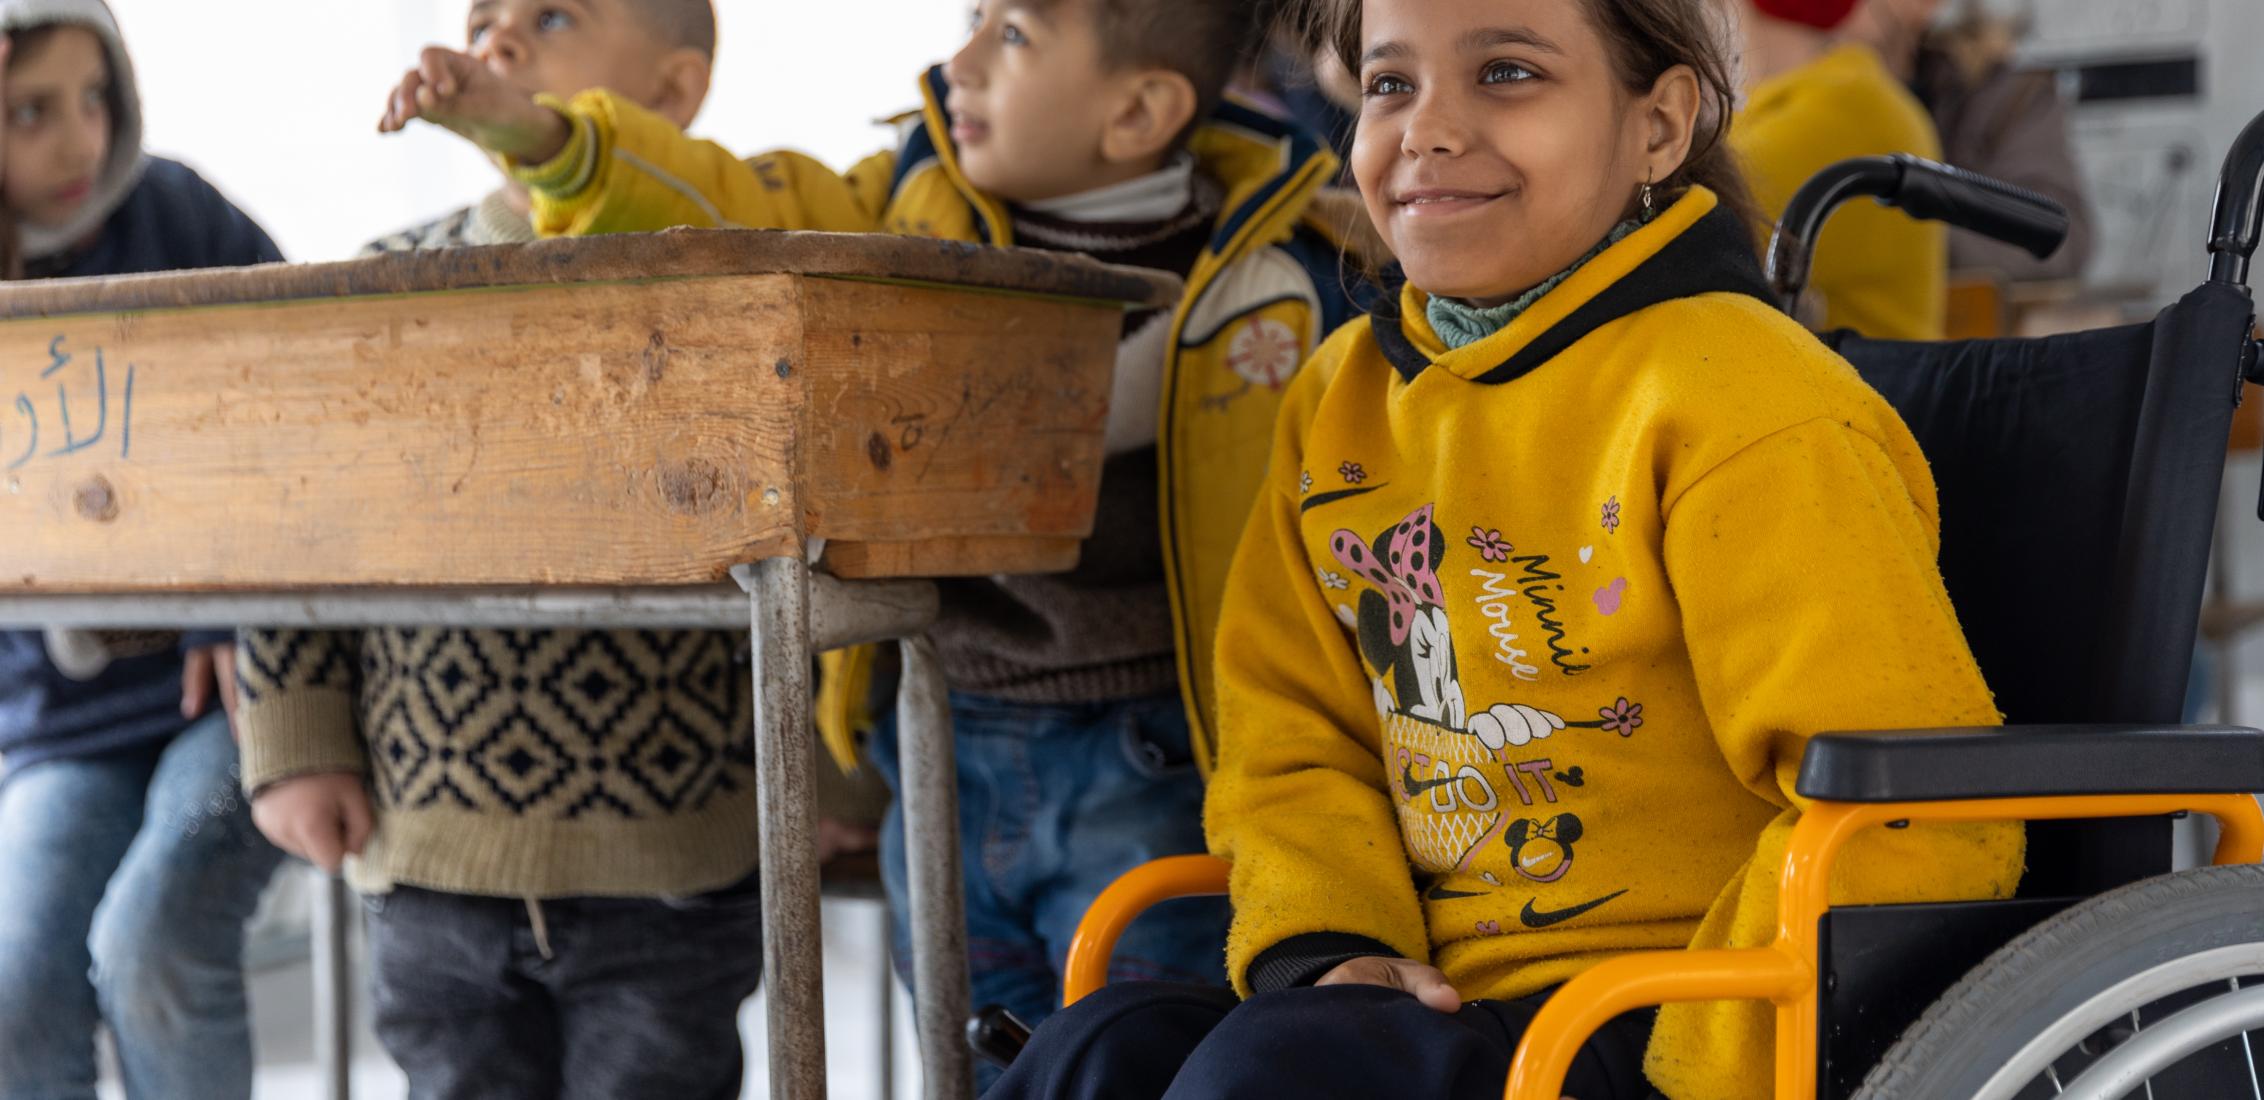 UN0855919/Janji Iman, de 13 años, participa en una actividad educativa apoyada por UNICEF en una escuela convertida en refugio en la ciudad de Alepo, Siria, el 15 de marzo de 2023. En Alepo, una de las zonas más afectadas por los mortíferos terremotos, UNICEF, junto con sus aliados, está ayudando a los niños afectados, incluidos los niños con discapacidad, con actividades educativas de entretenimiento y clases de recuperación para ayudarles a recuperar el aprendizaje perdido y restablecer la sensación de es